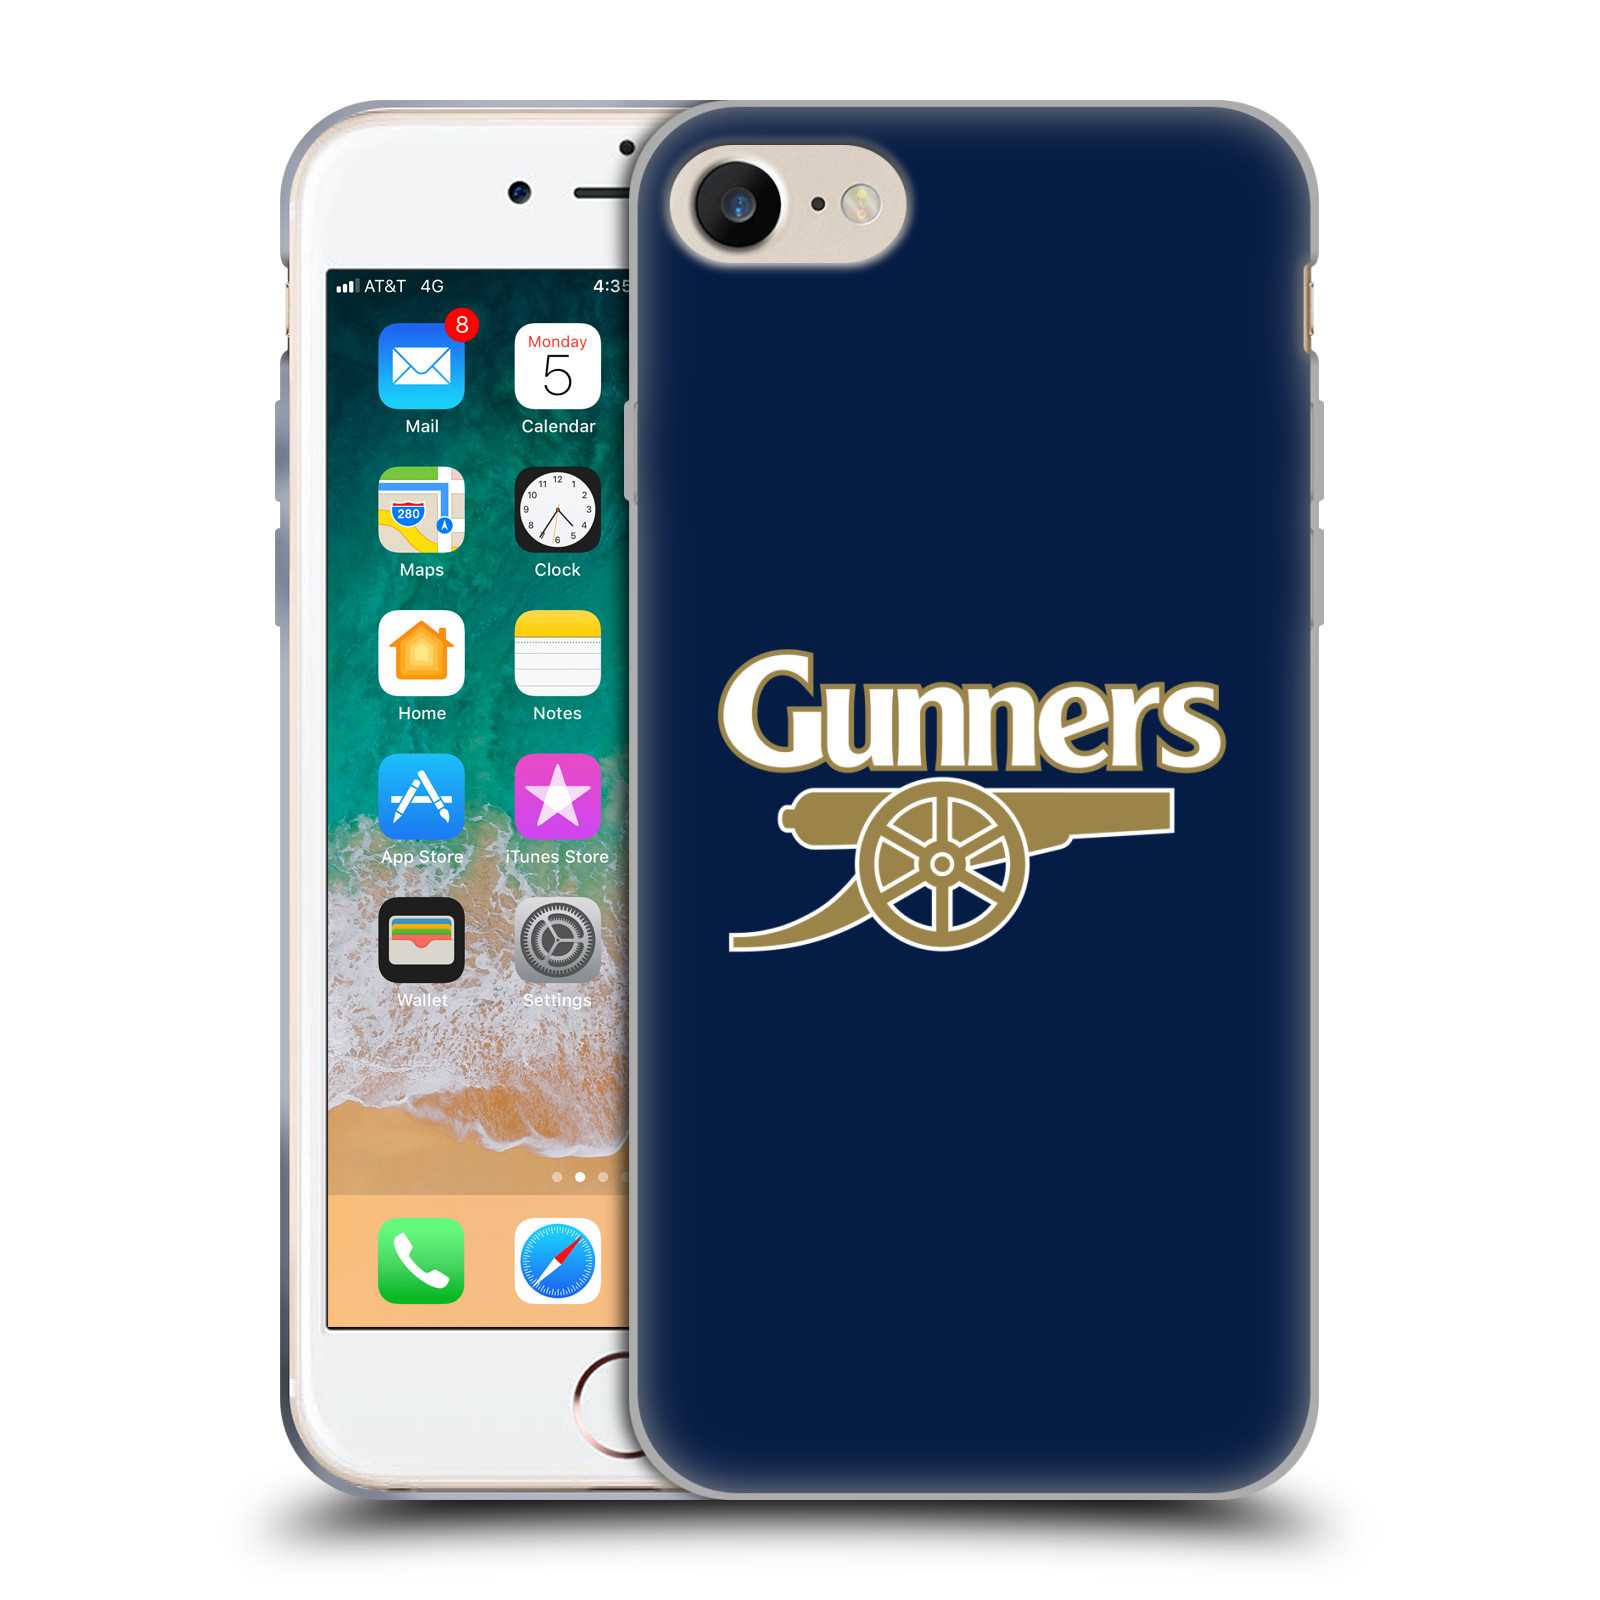 Silikonové pouzdro na mobil Apple iPhone 8 - Head Case - Arsenal FC - Gunners (Silikonový kryt či obal na mobilní telefon s motivem klubu Arsenal FC - Gunners pro Apple iPhone 8)